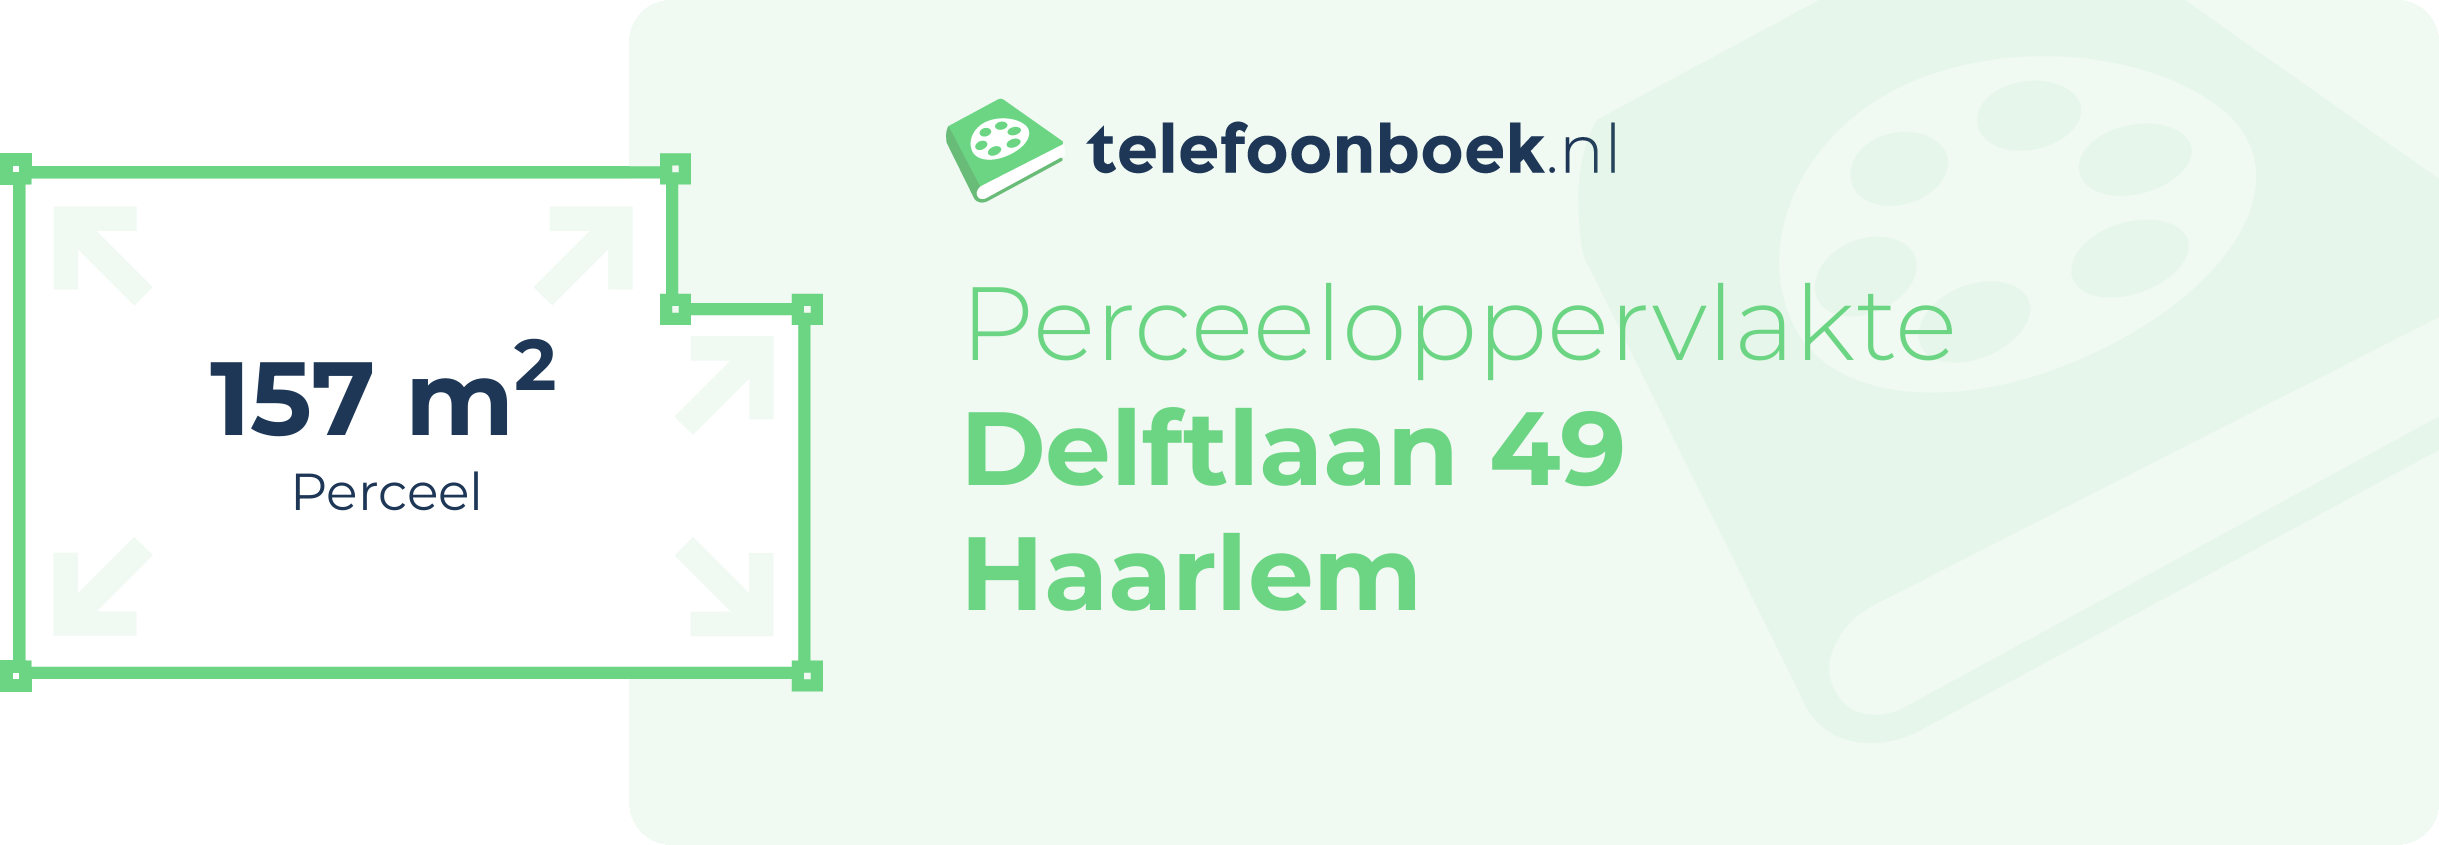 Perceeloppervlakte Delftlaan 49 Haarlem